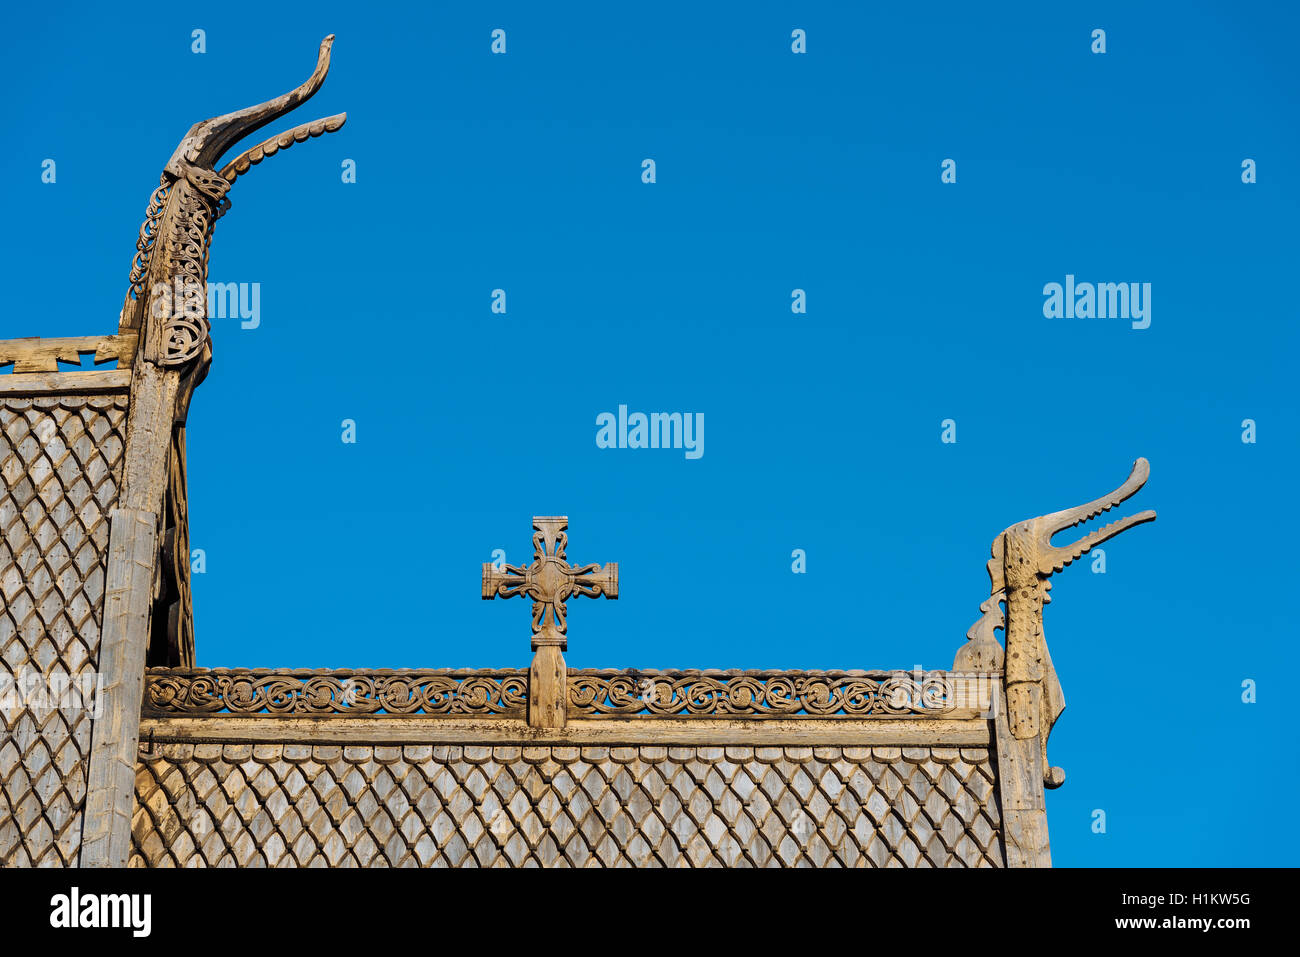 La toiture en bardeaux de bois, croix de bois et tête de dragon, Église Lom, Lom, Oppland, Norvège Banque D'Images